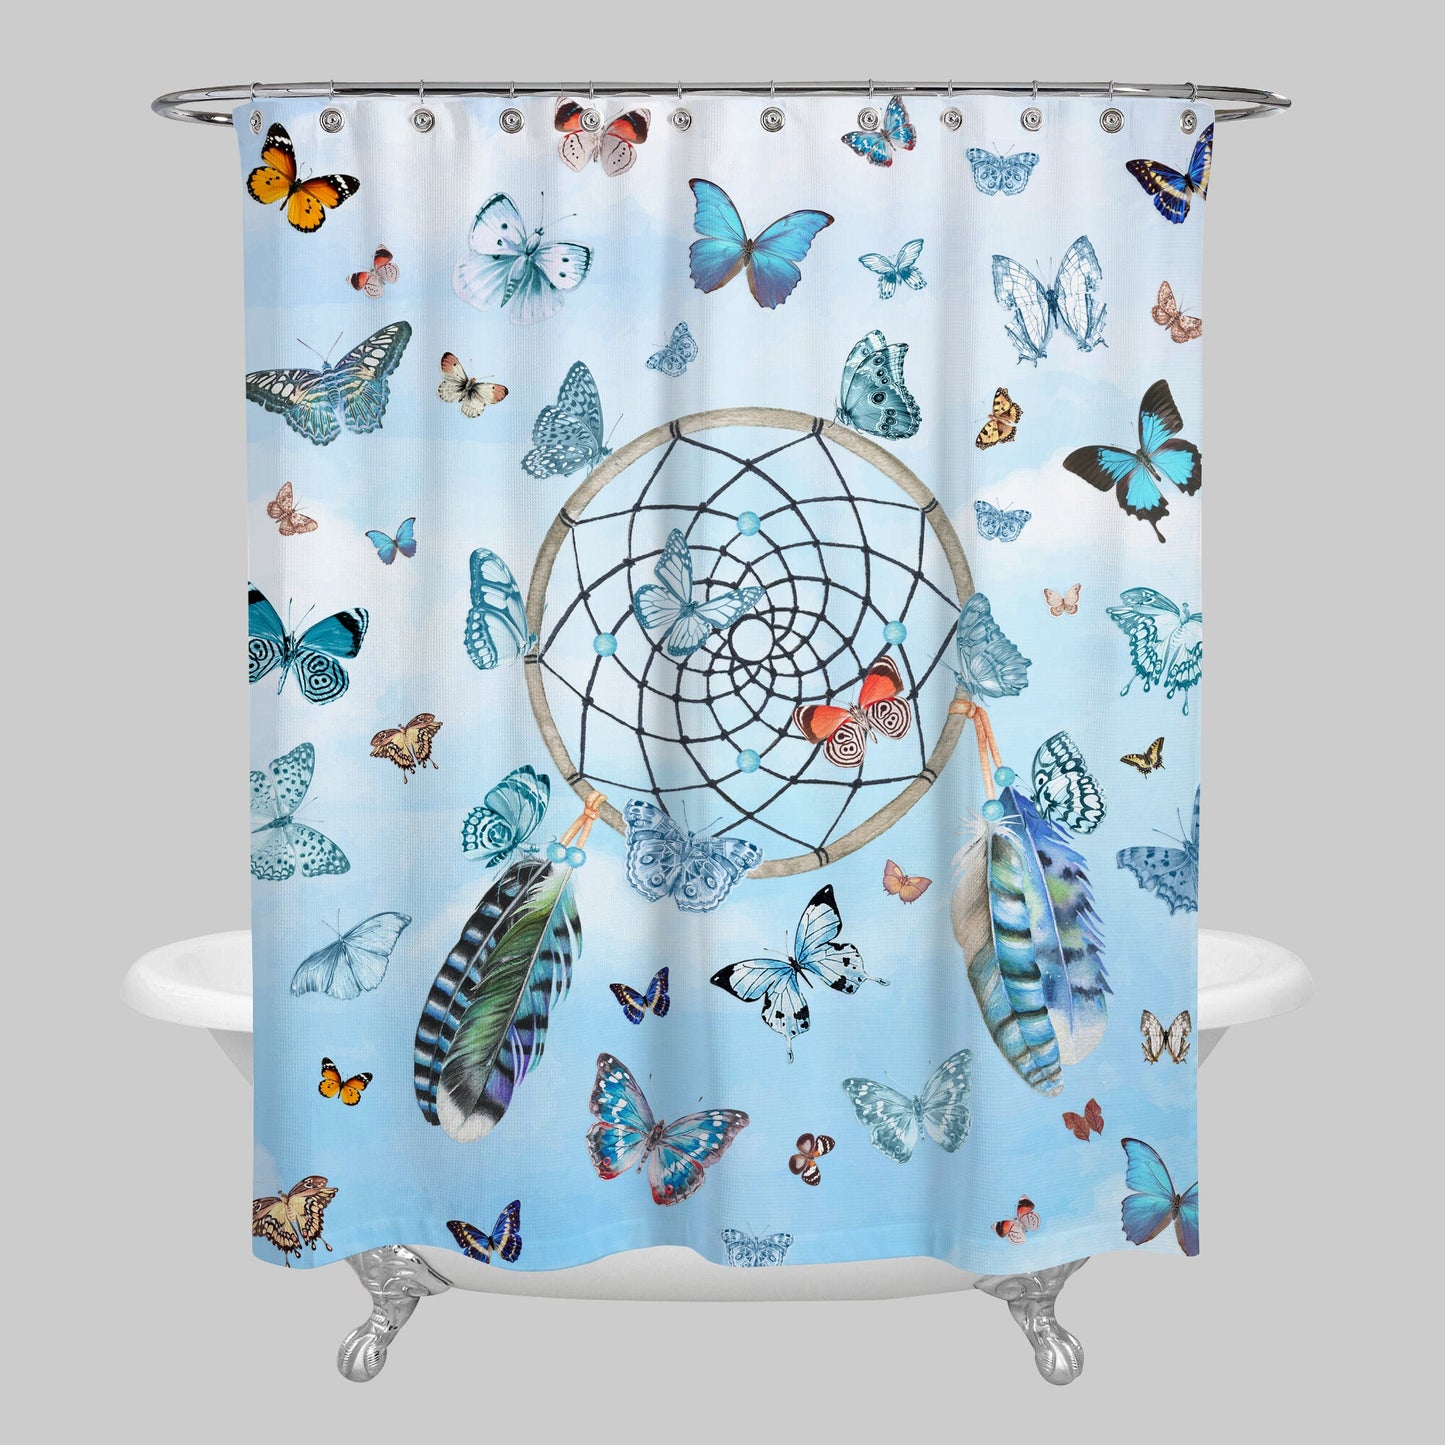 Butterfly Dreamcatcher Shower Curtain butterflies shower curtains girls shower curtains bath mat blue dream catcher shower curtains